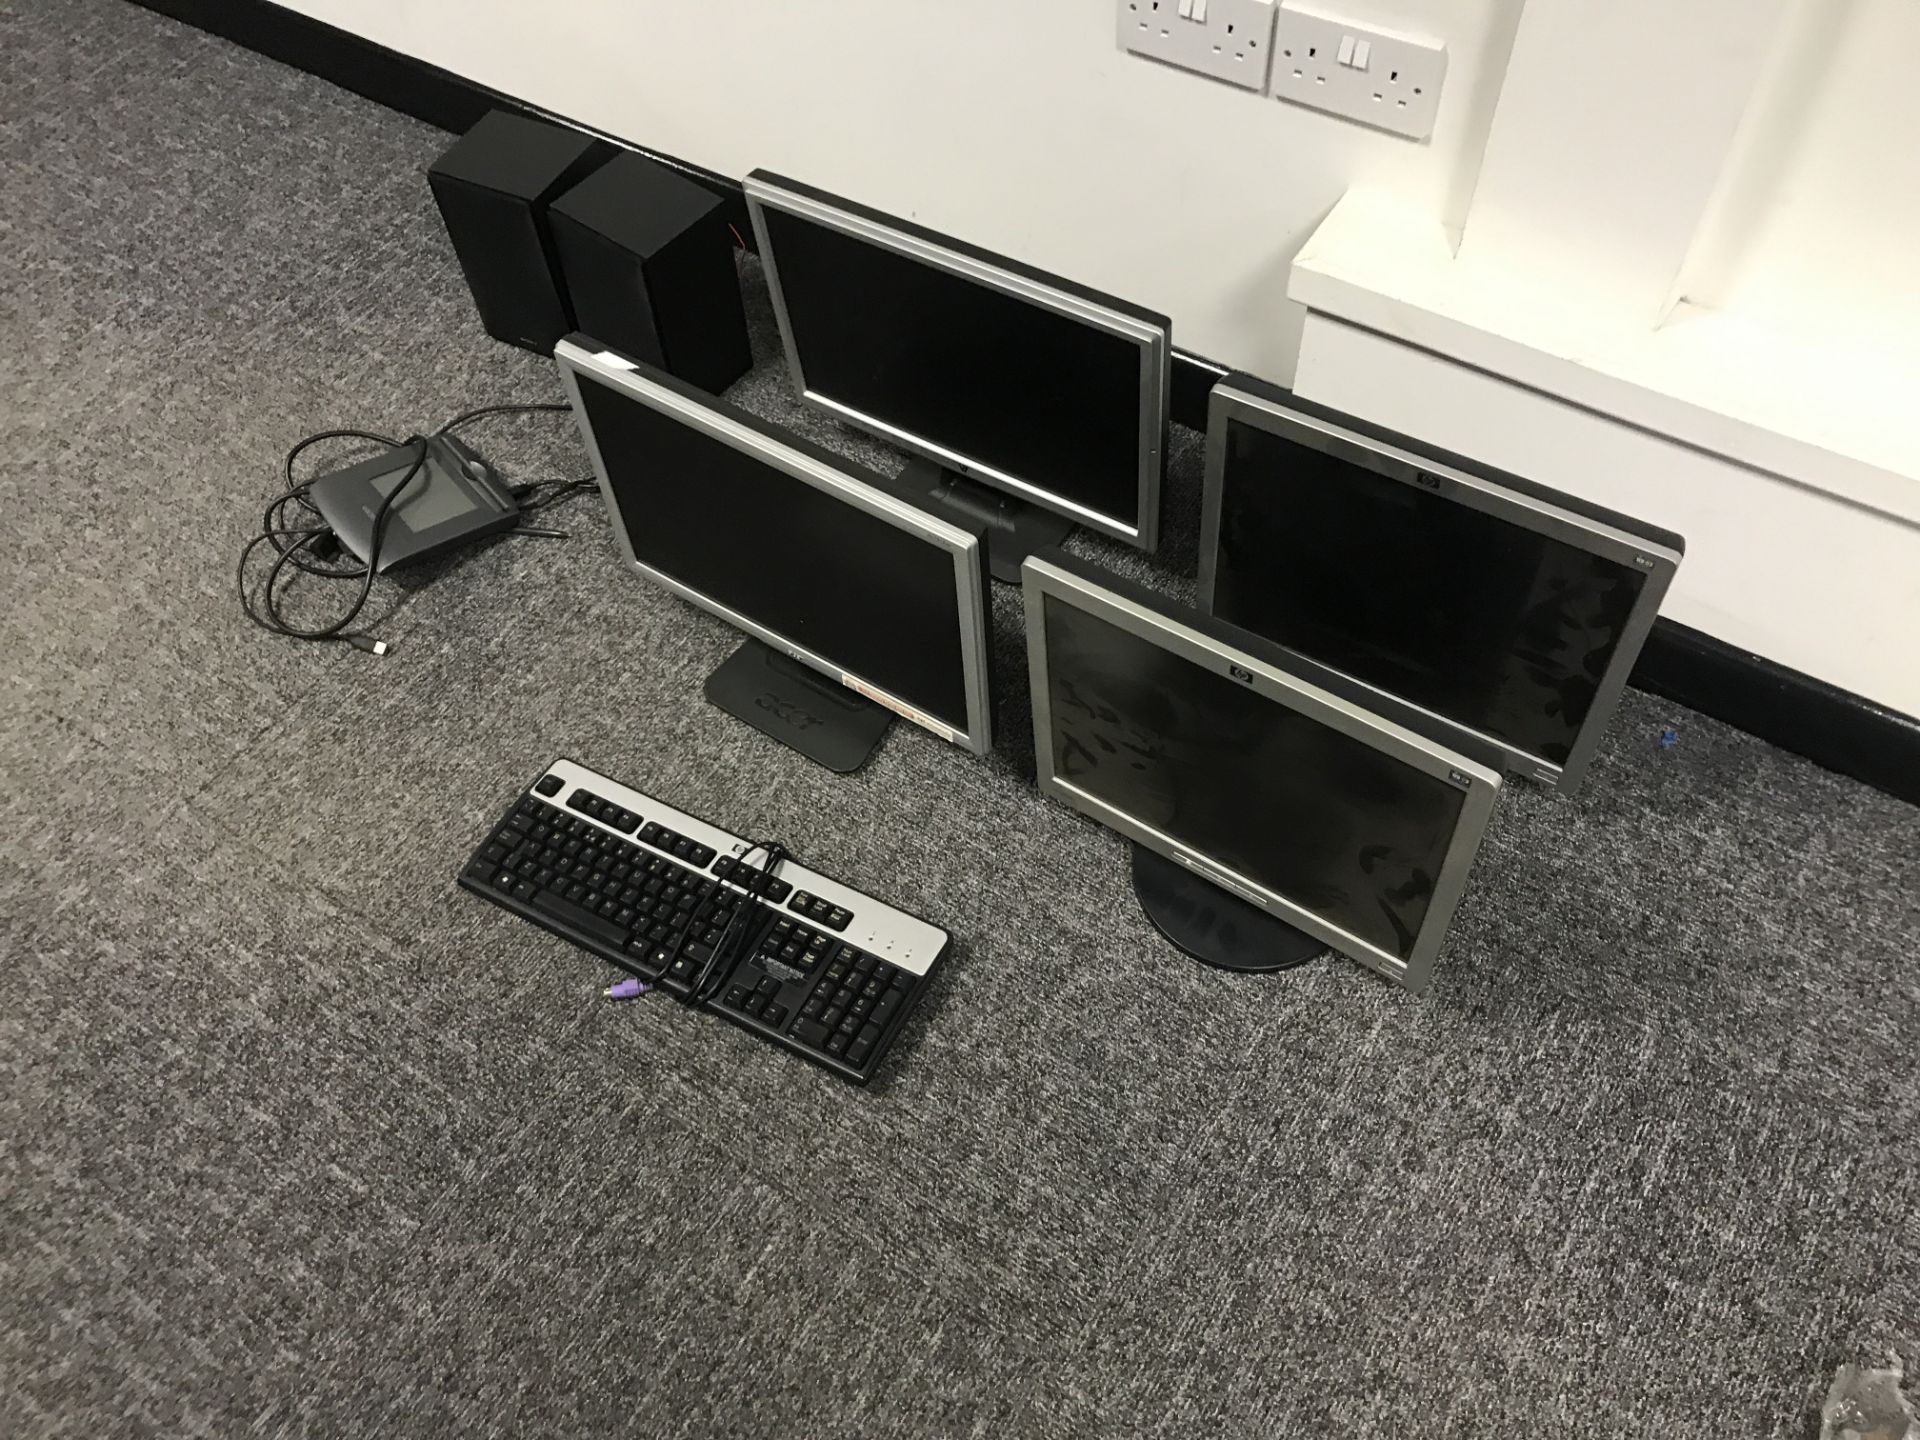 Flat Screen Monitors, Keyboard and Speaker